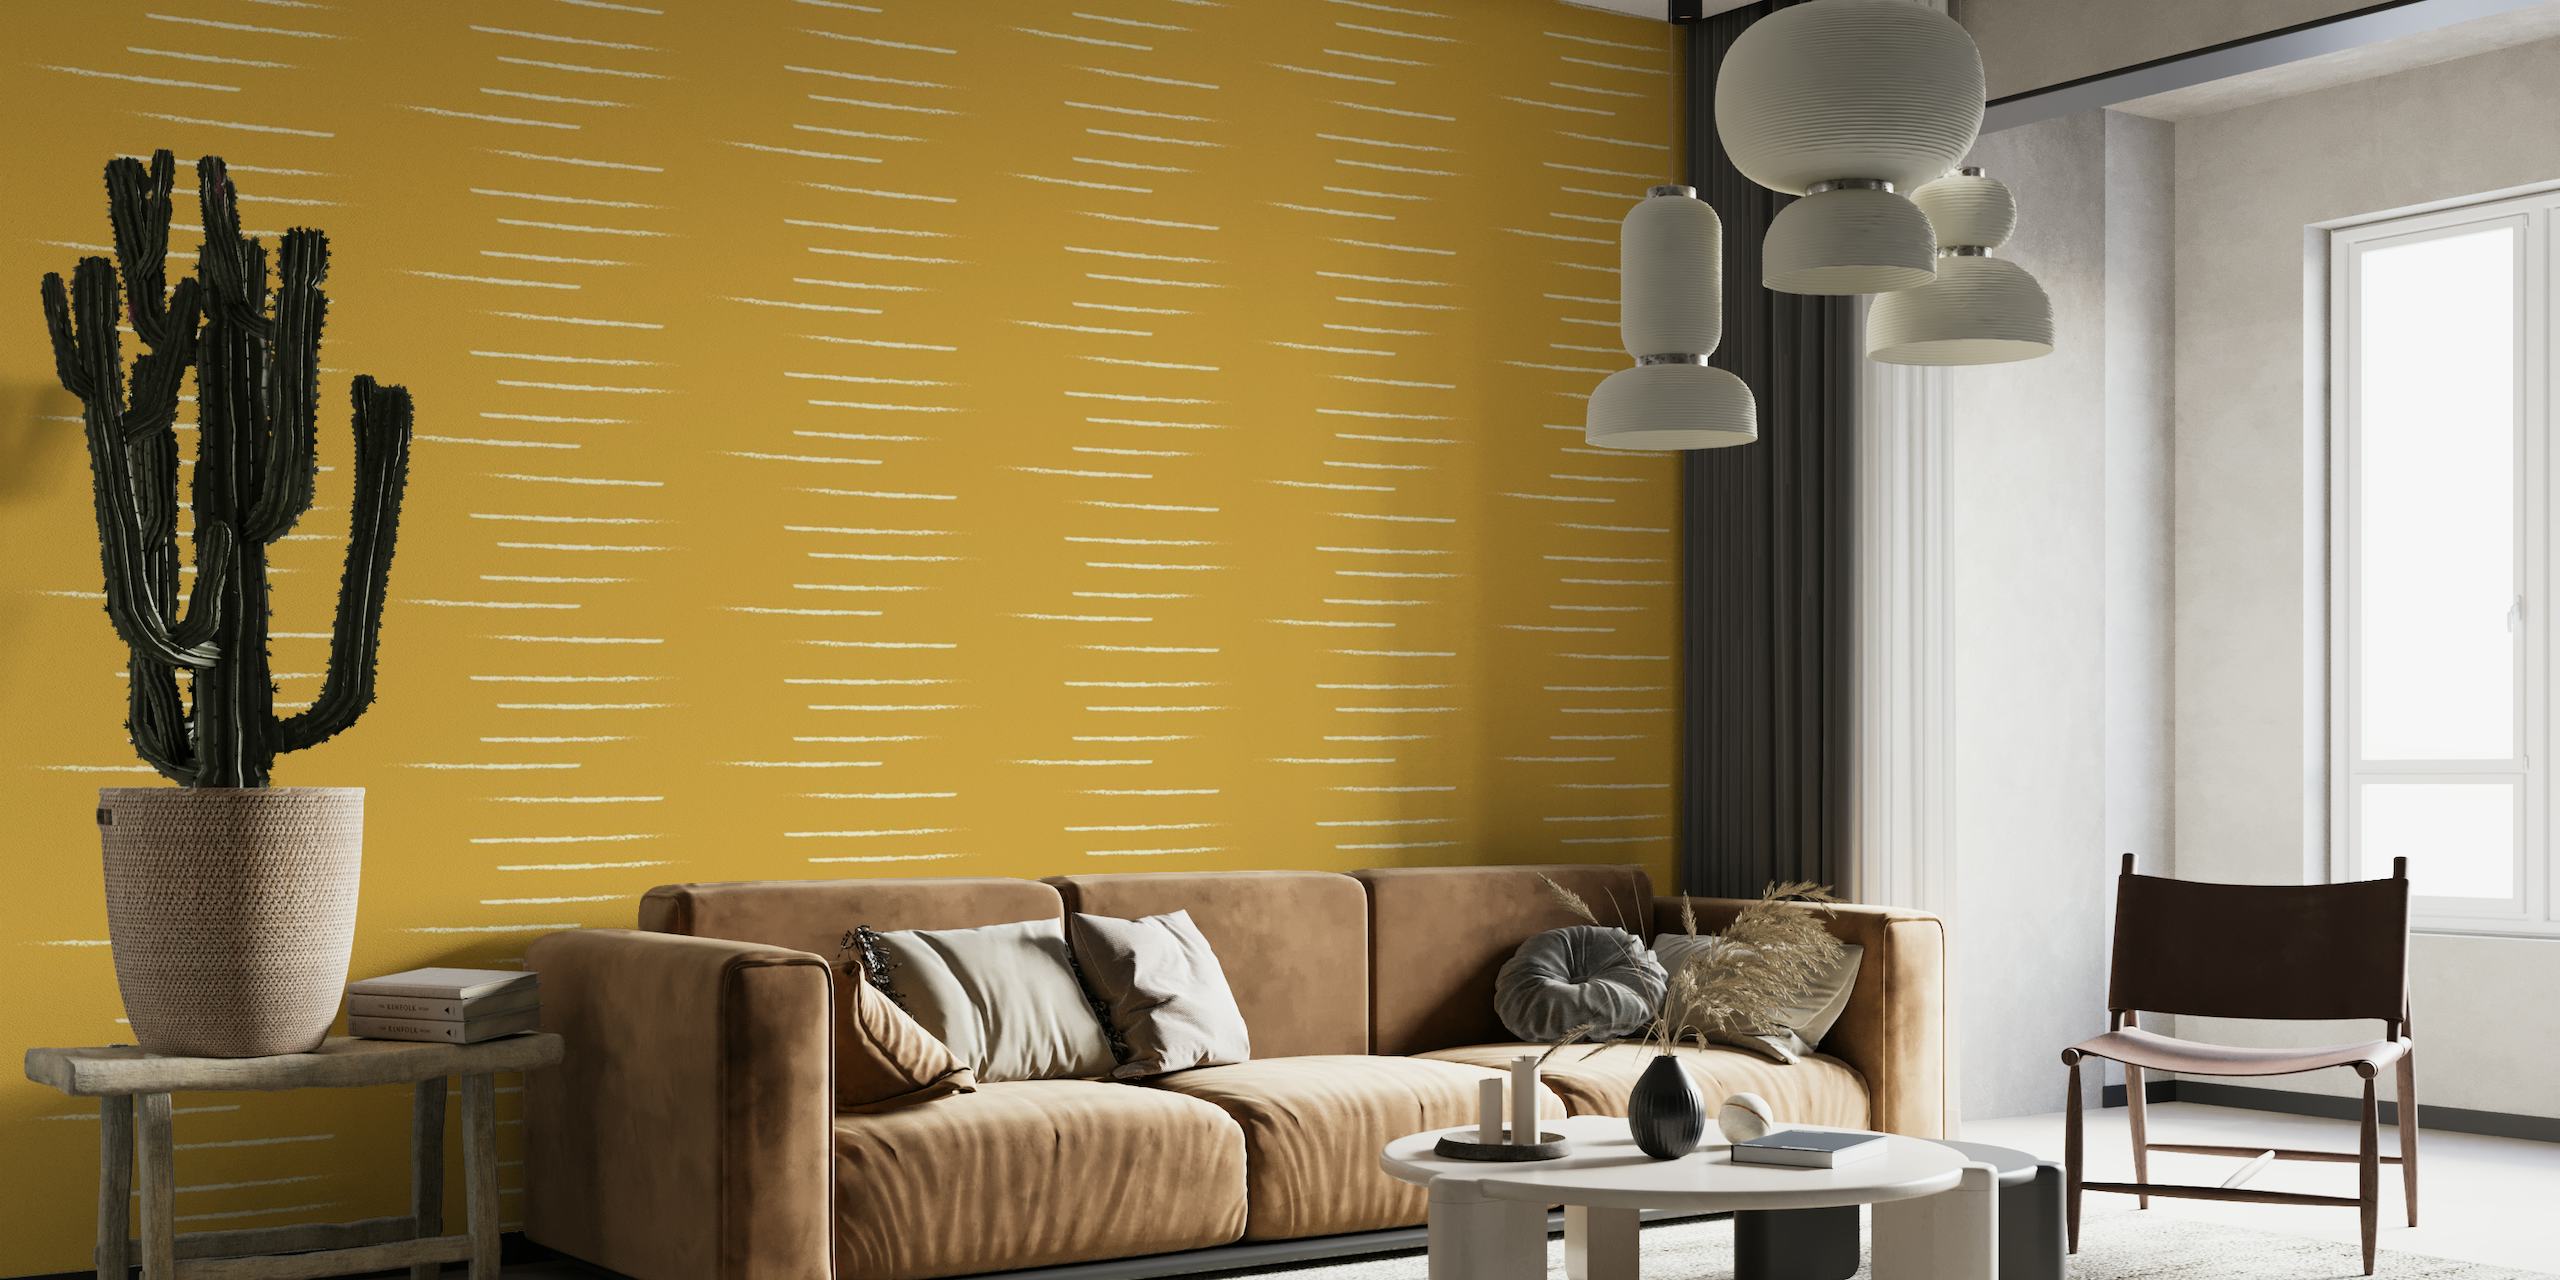 Horizontaal gestreept fotobehang in mosterdbeige tinten die een warme en minimalistische stijl weerspiegelen